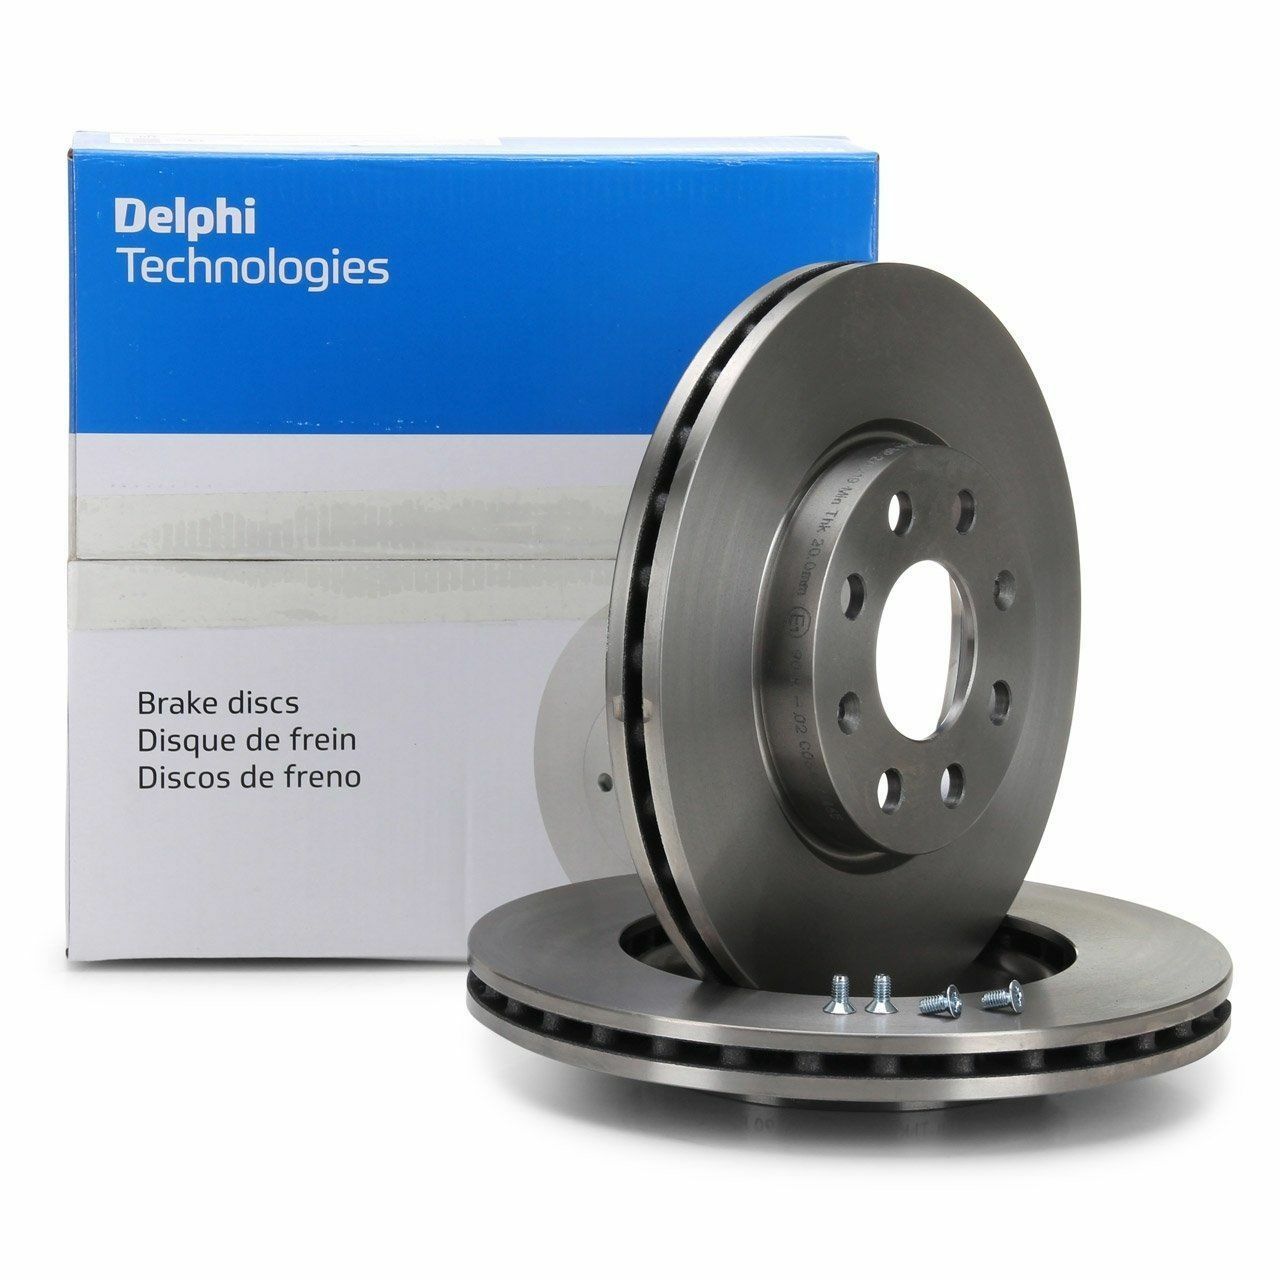 Citroen C4 Picasso Ön Fren Disk Takımı Dephi Marka Alman Ürünü